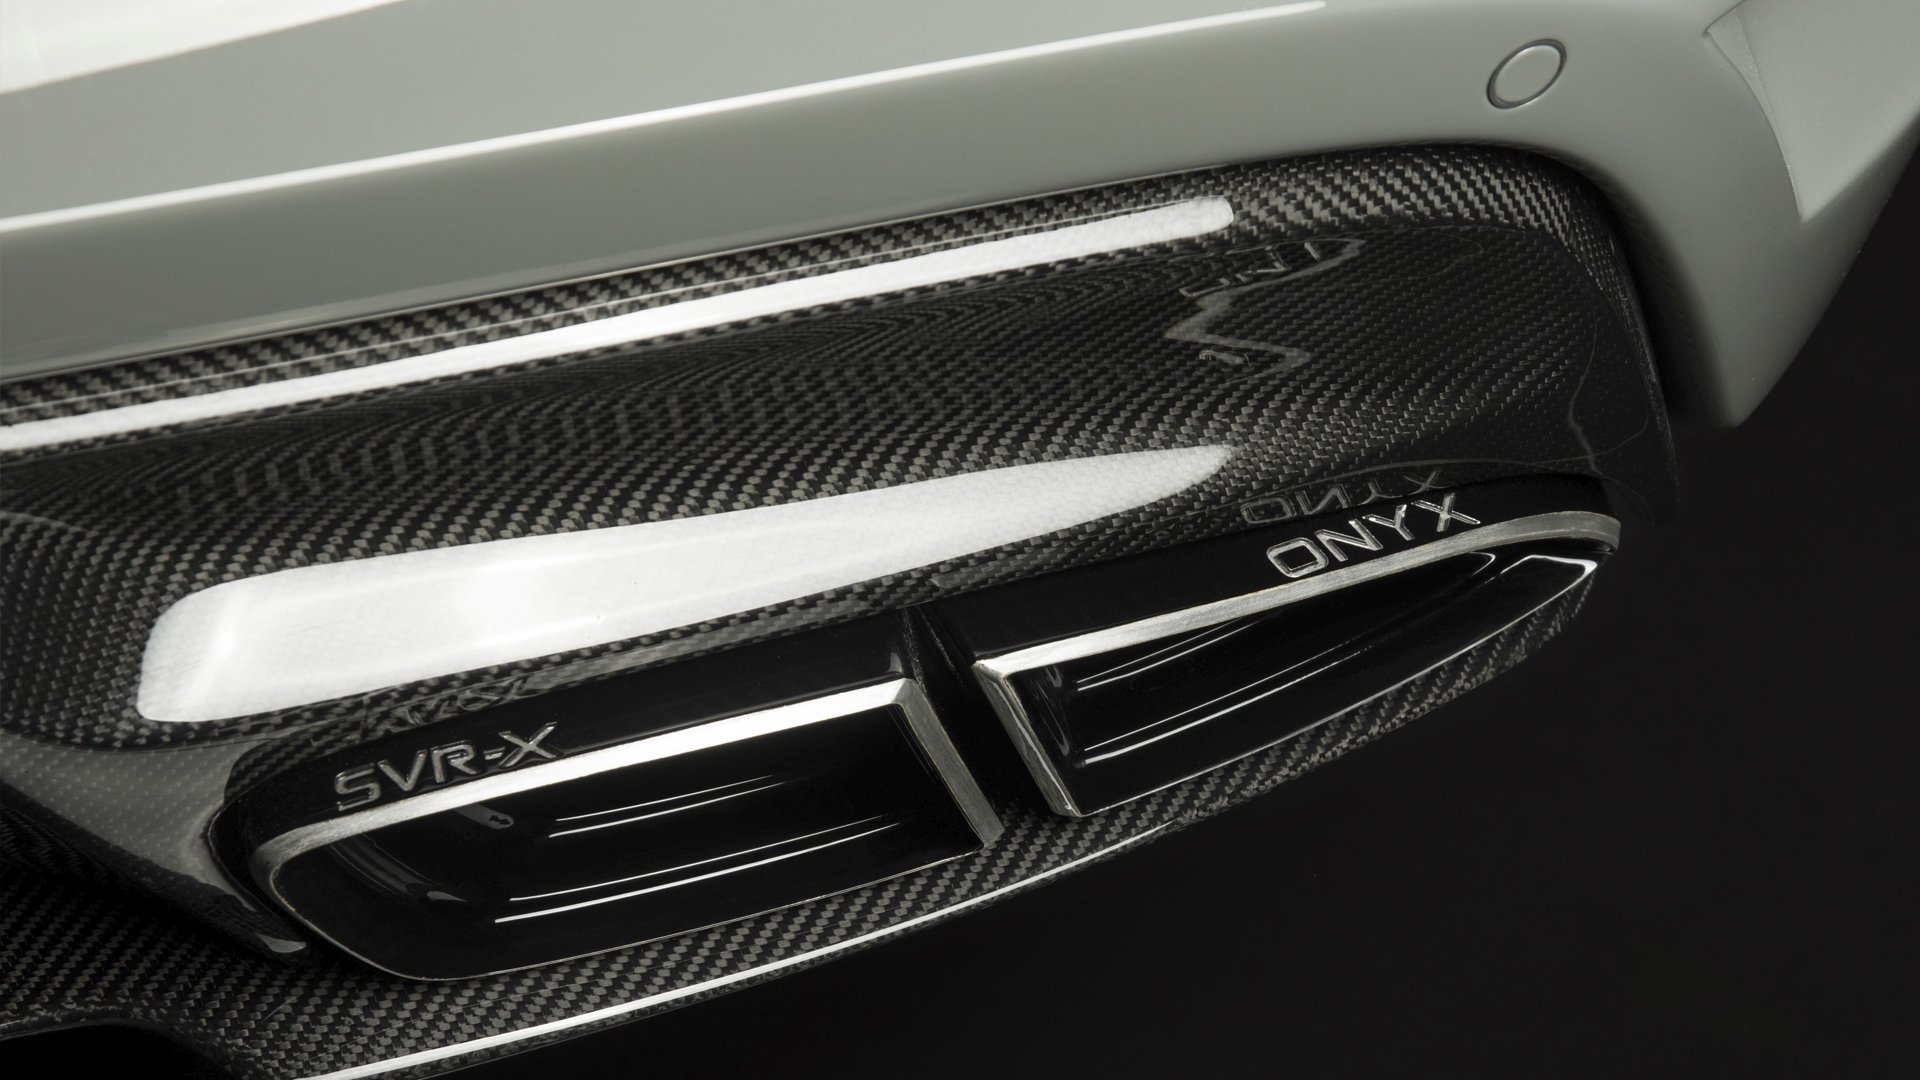 Onyx SVR-X body kit for RANGE ROVER new model